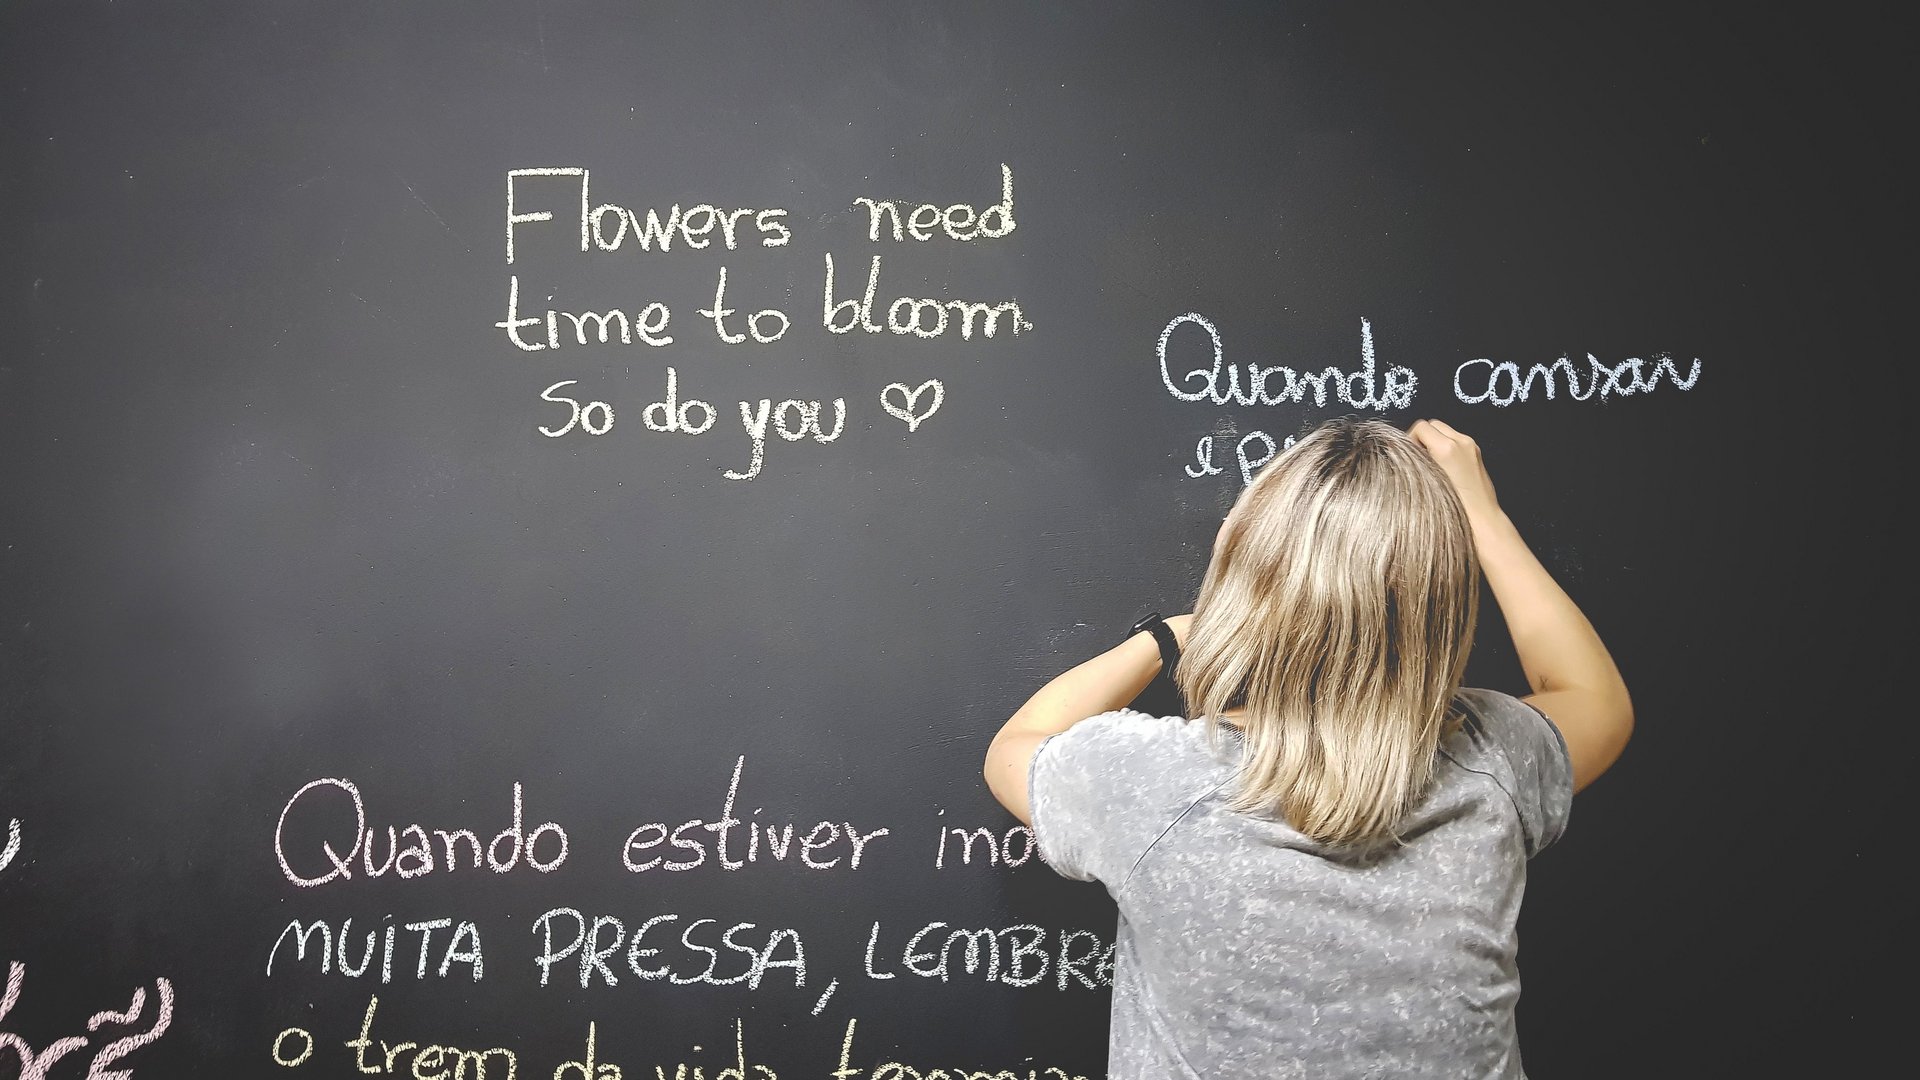 Eine Frau schreibt Sätze in verschiedenen Sprachen an eine Tafel